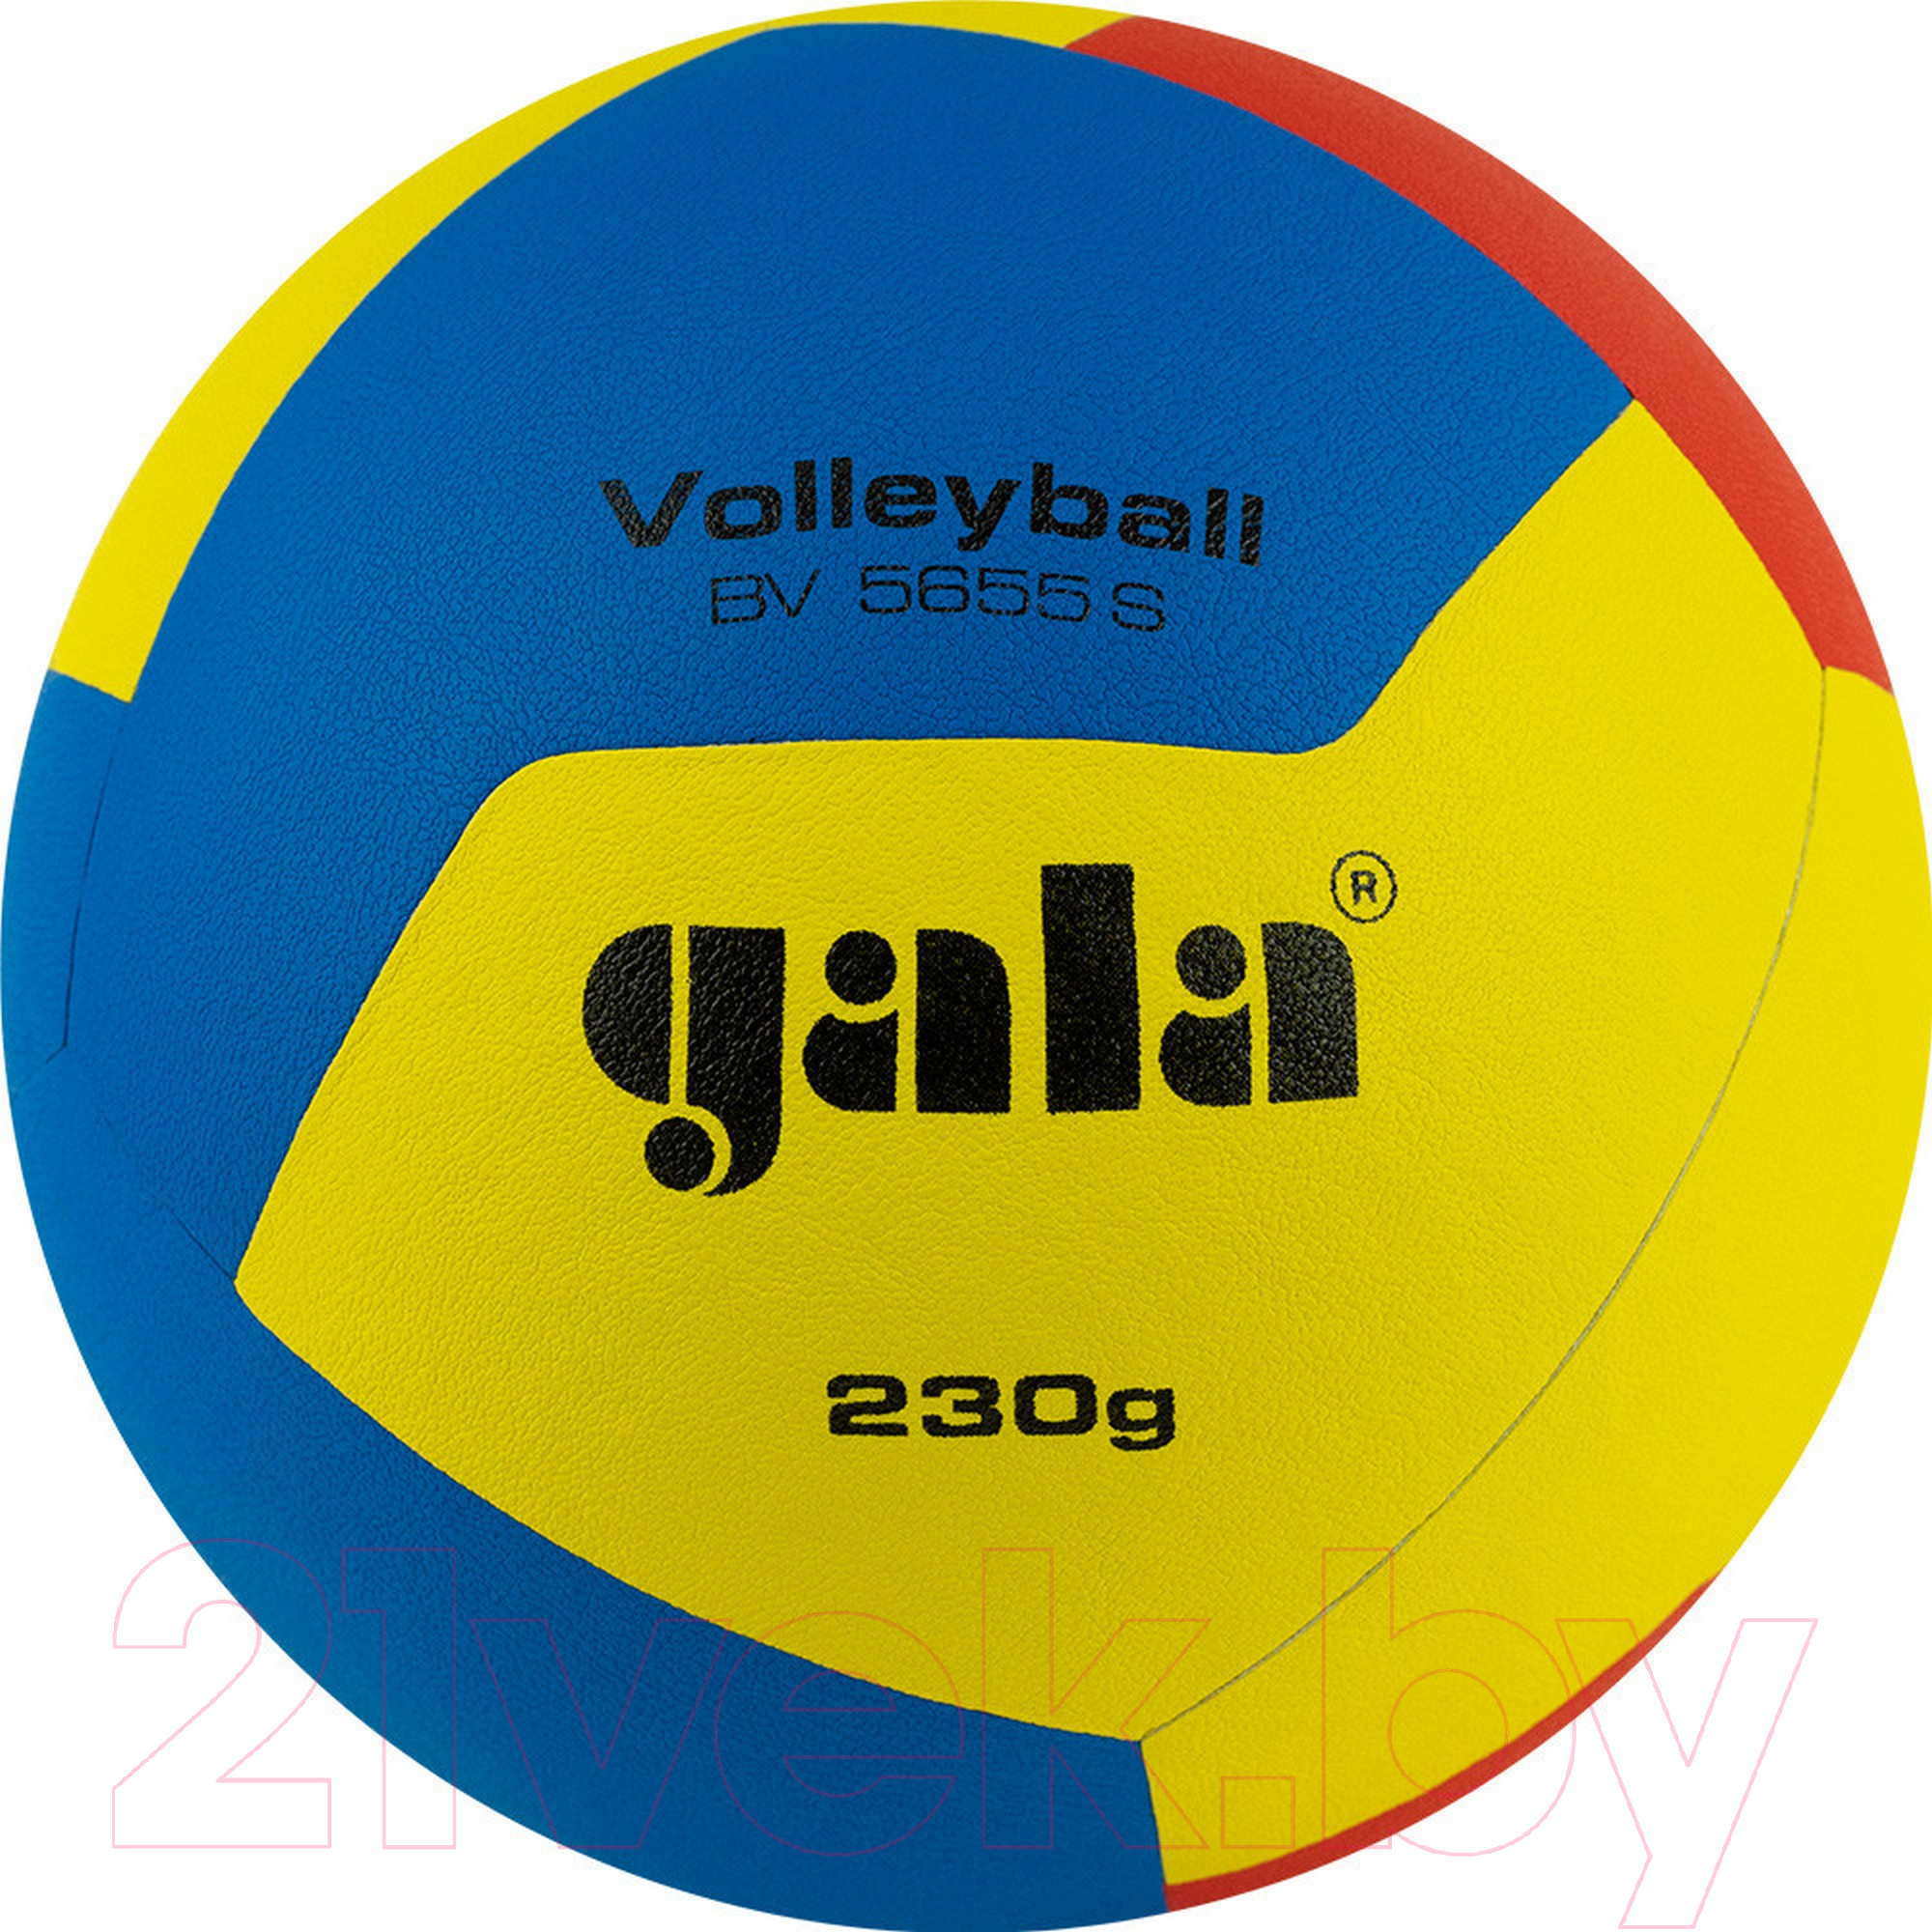 Мяч волейбольный Gala Sport Training 230 12 / BV5655S